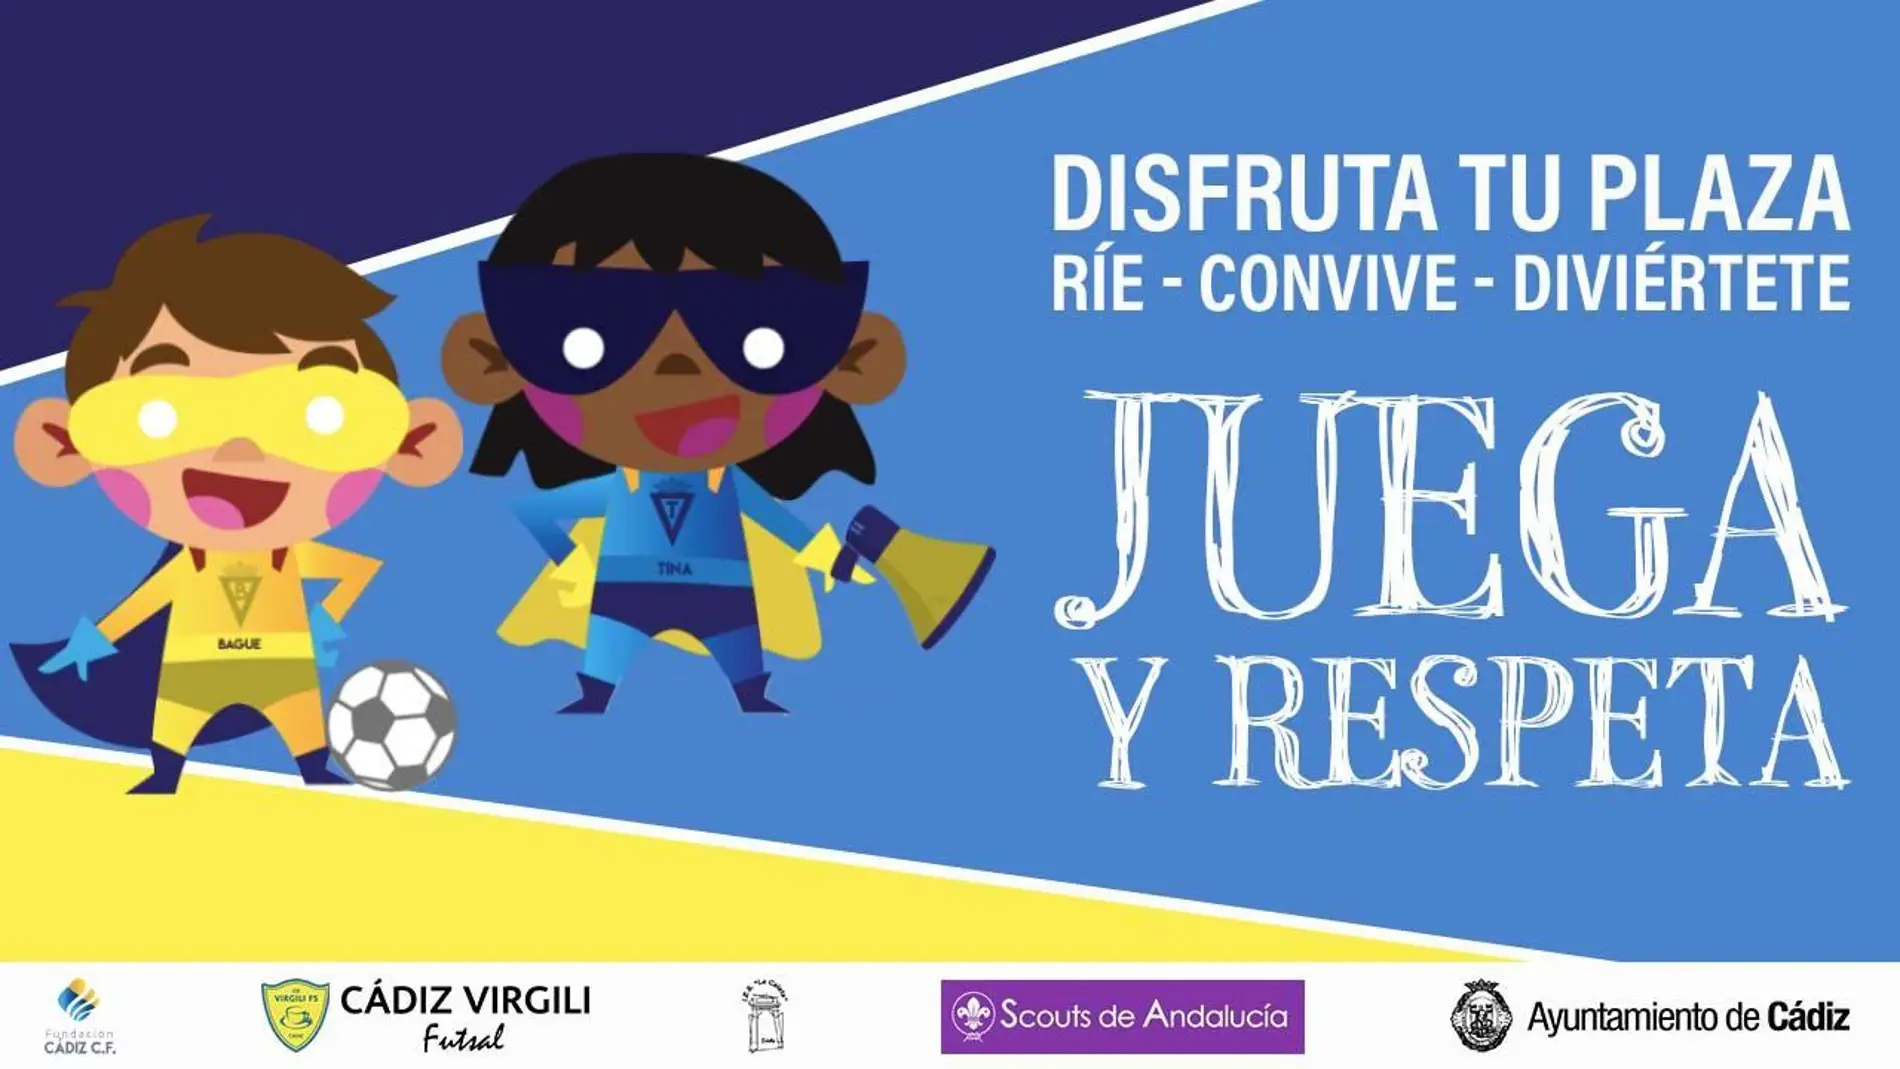 Cartel oficial de la campaña del Cádiz CF